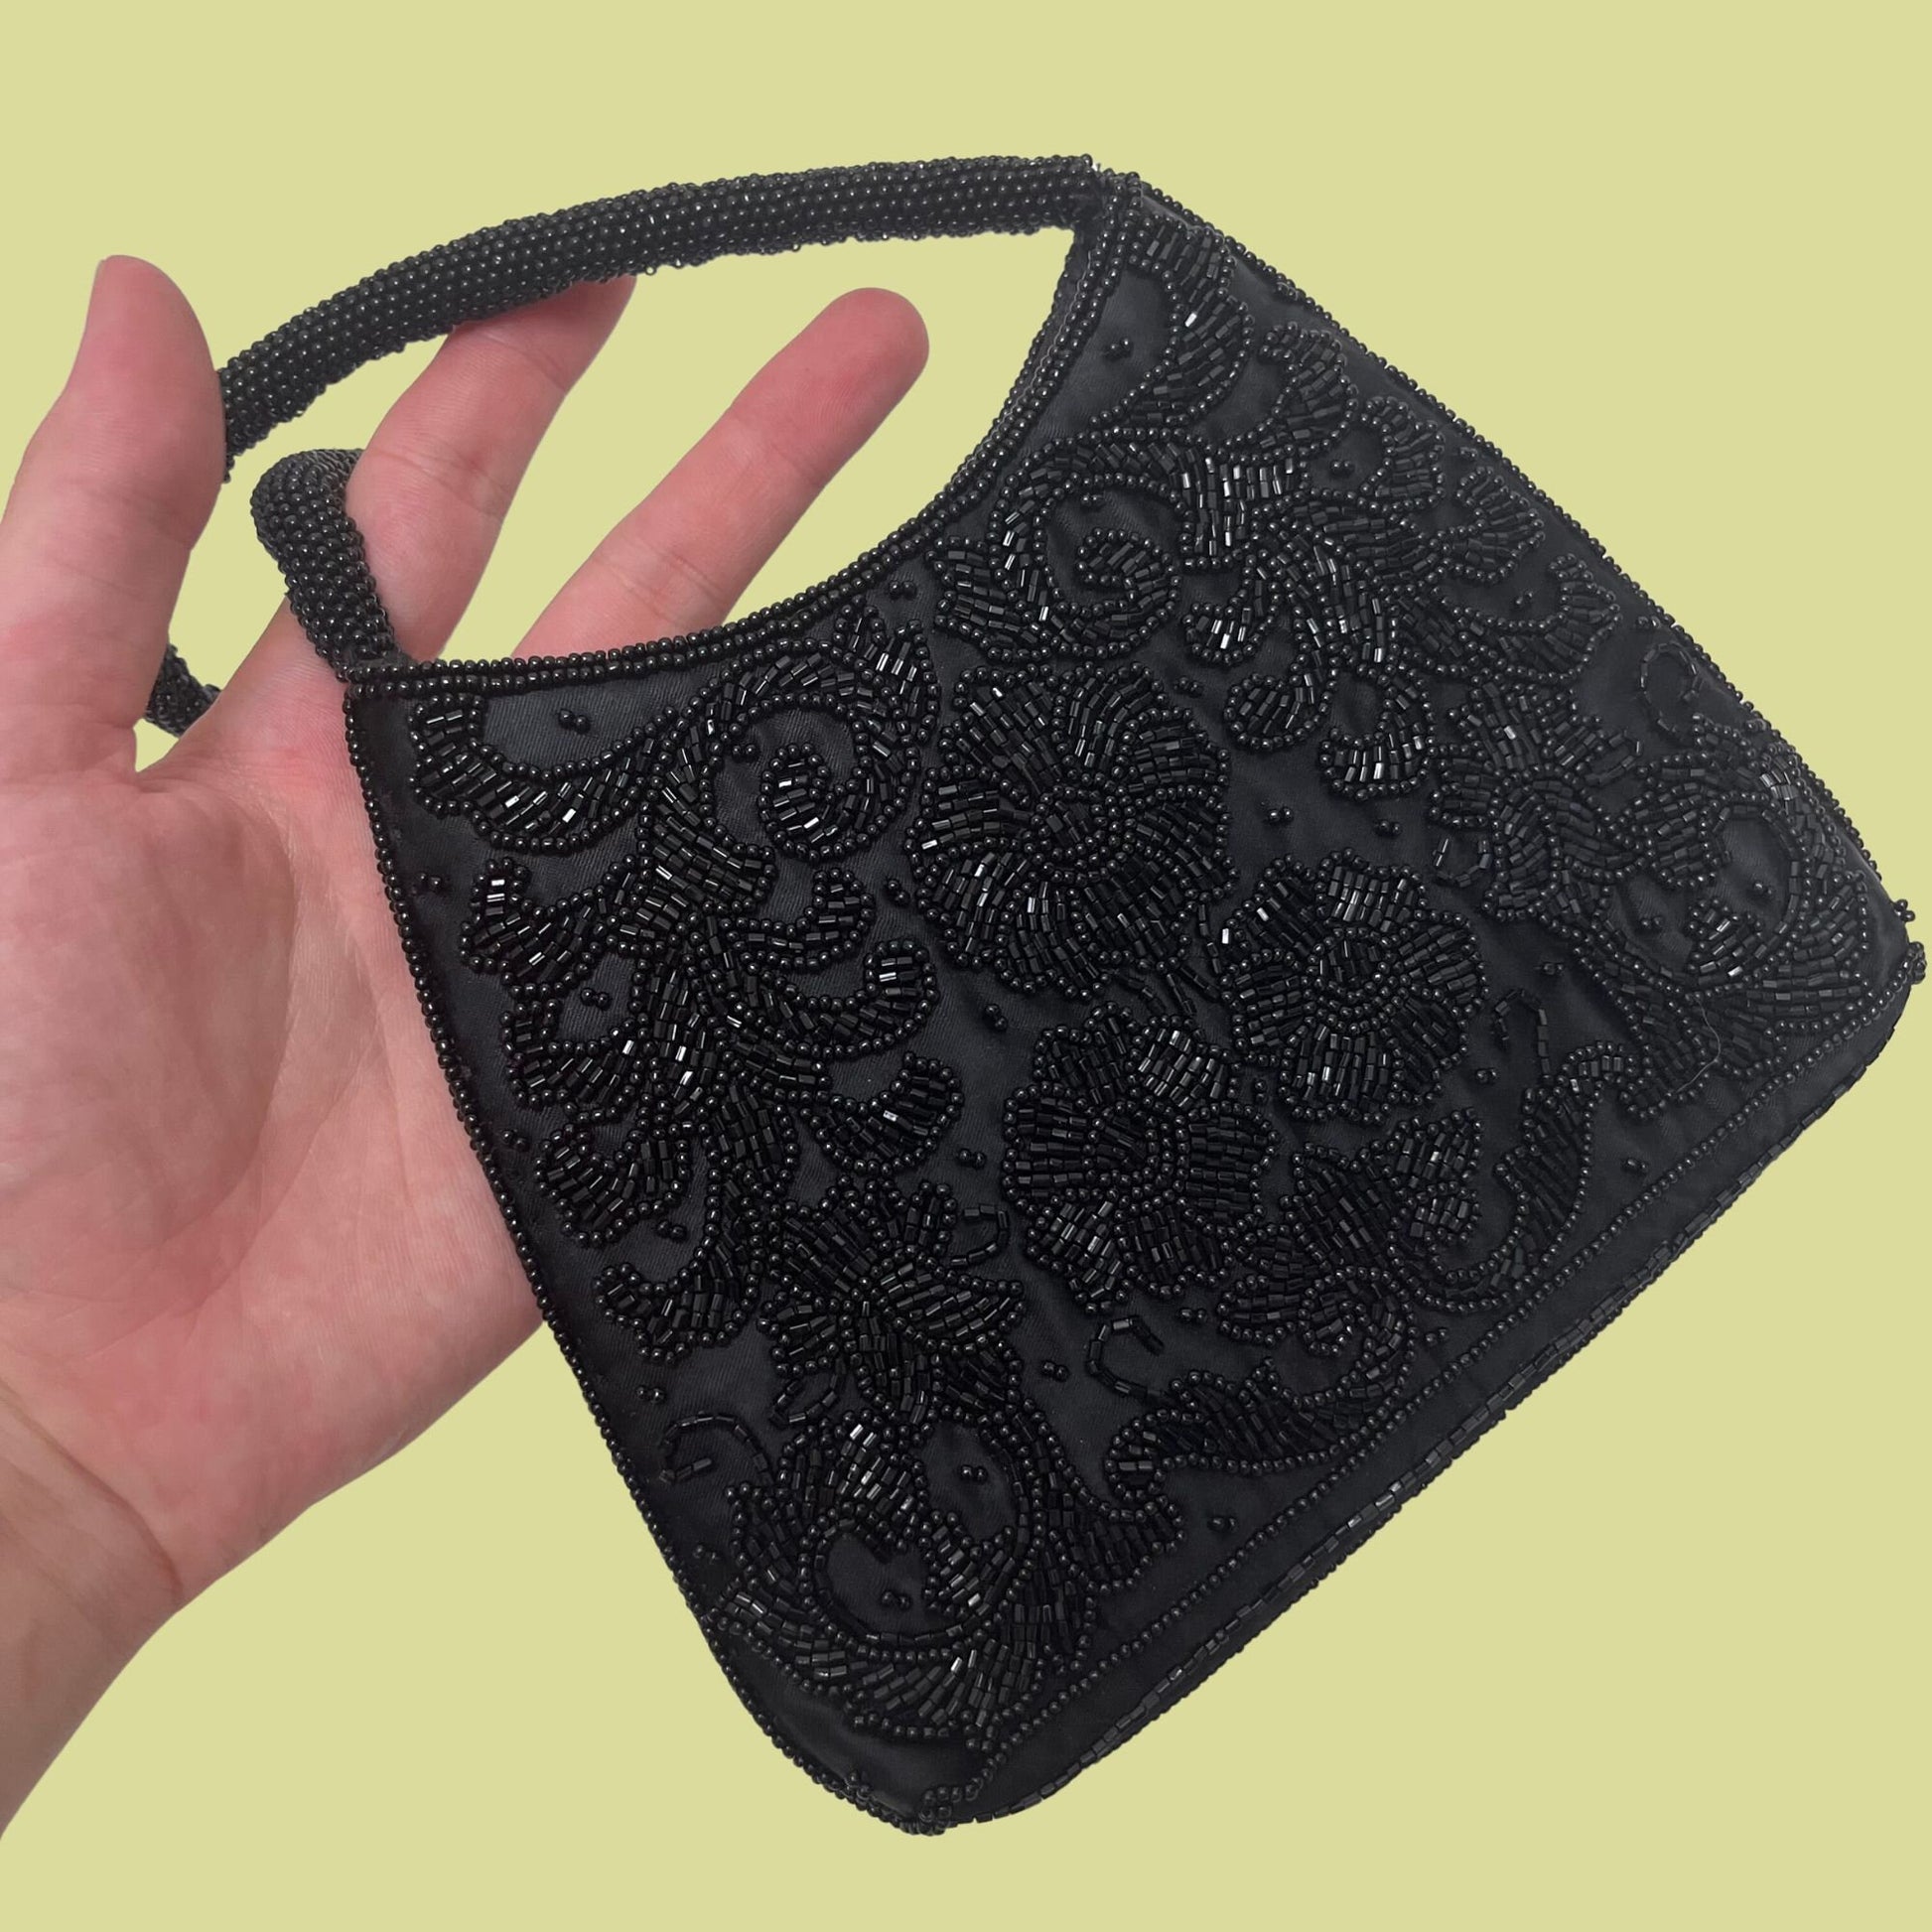 80s black beaded floral handbag, vintage 1980s evening bag with flower designs, small vintage black purse